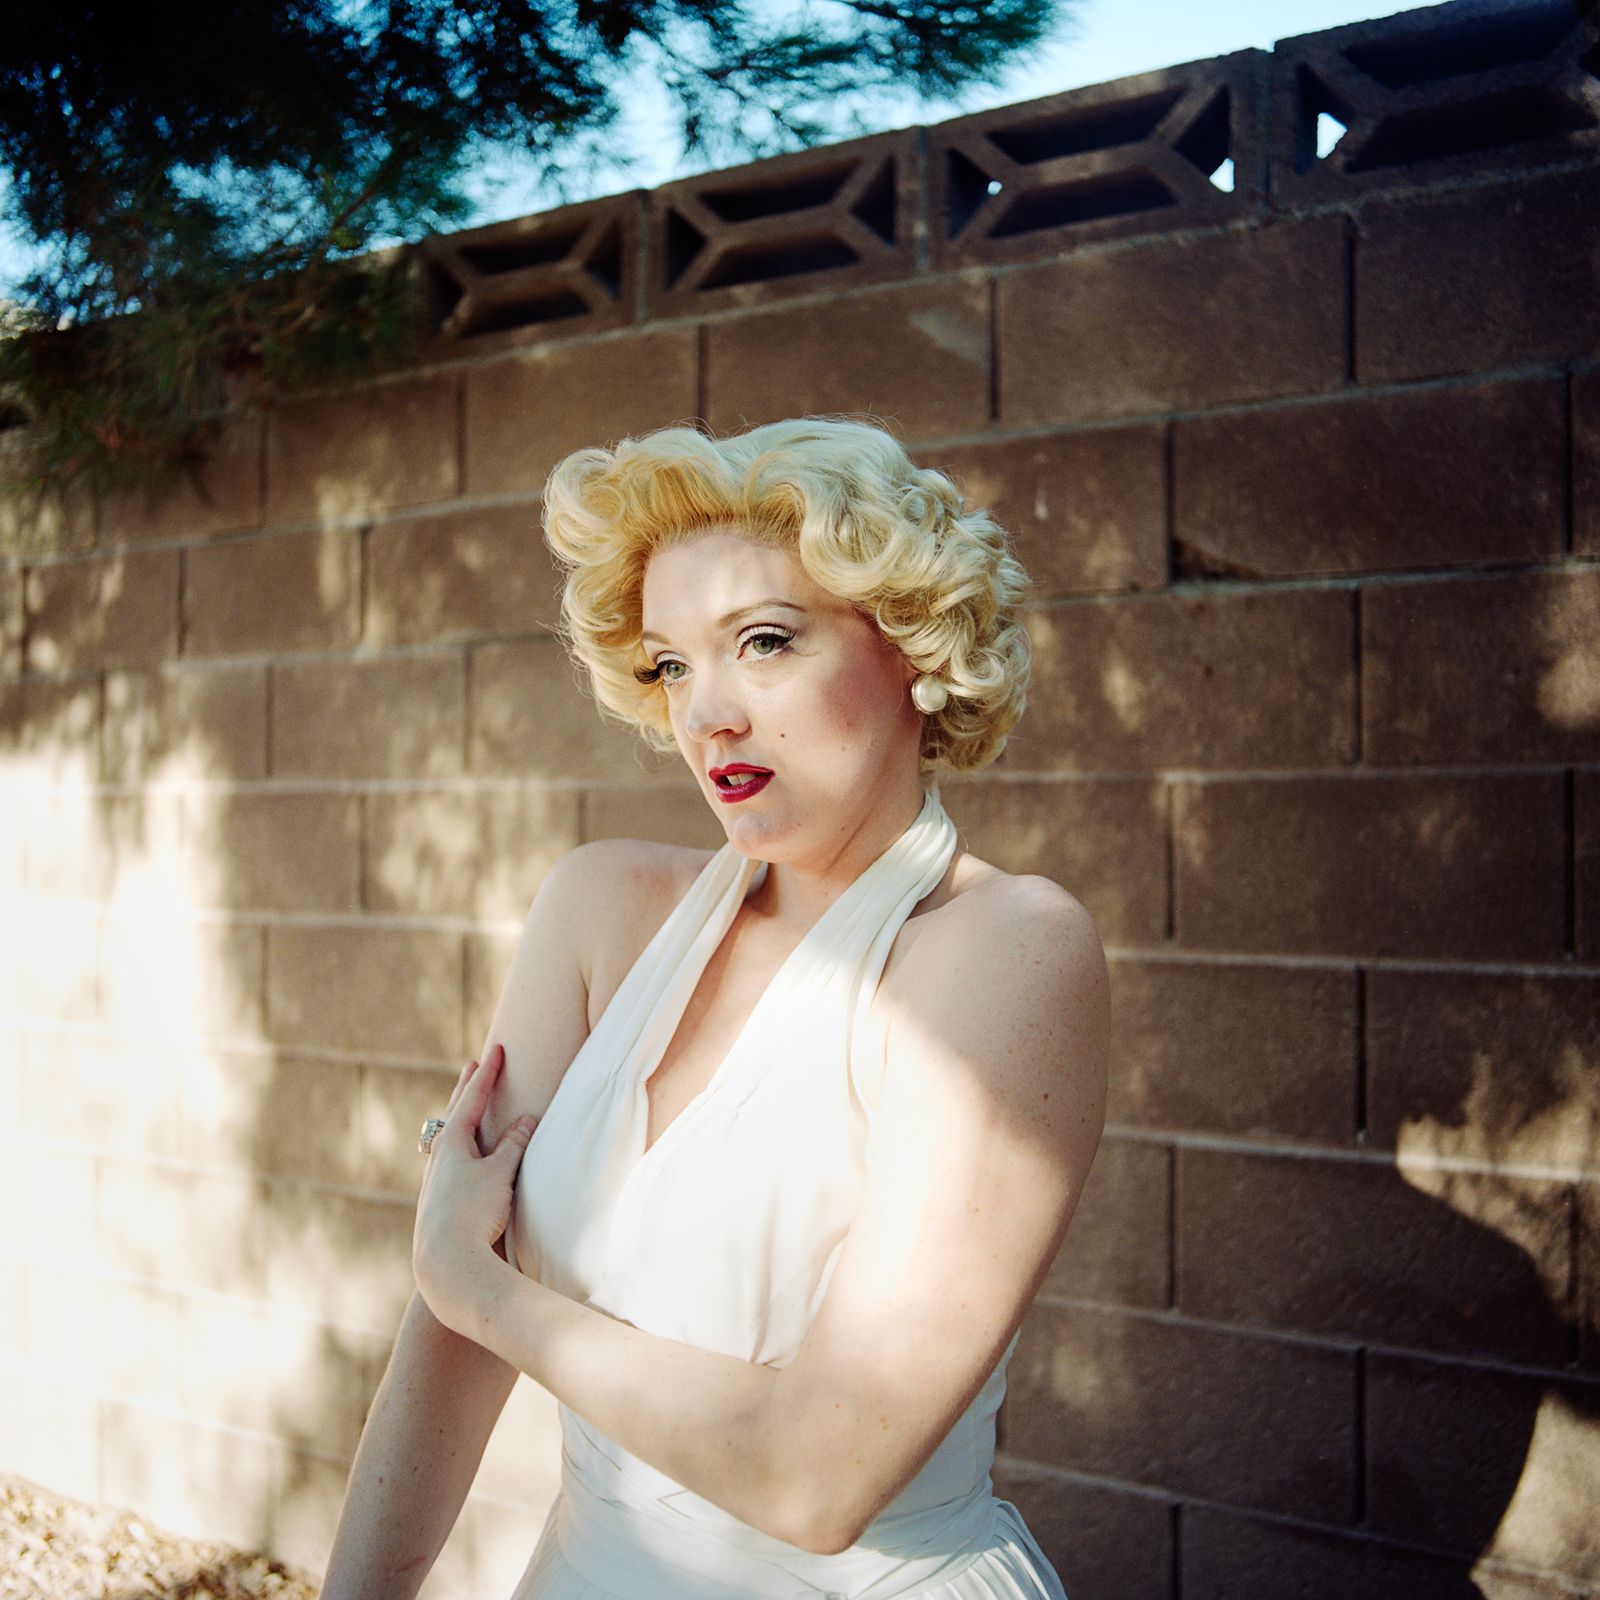 © Emily Berl - Catherine as Marilyn Monroe, Las Vegas, NV, 2014.